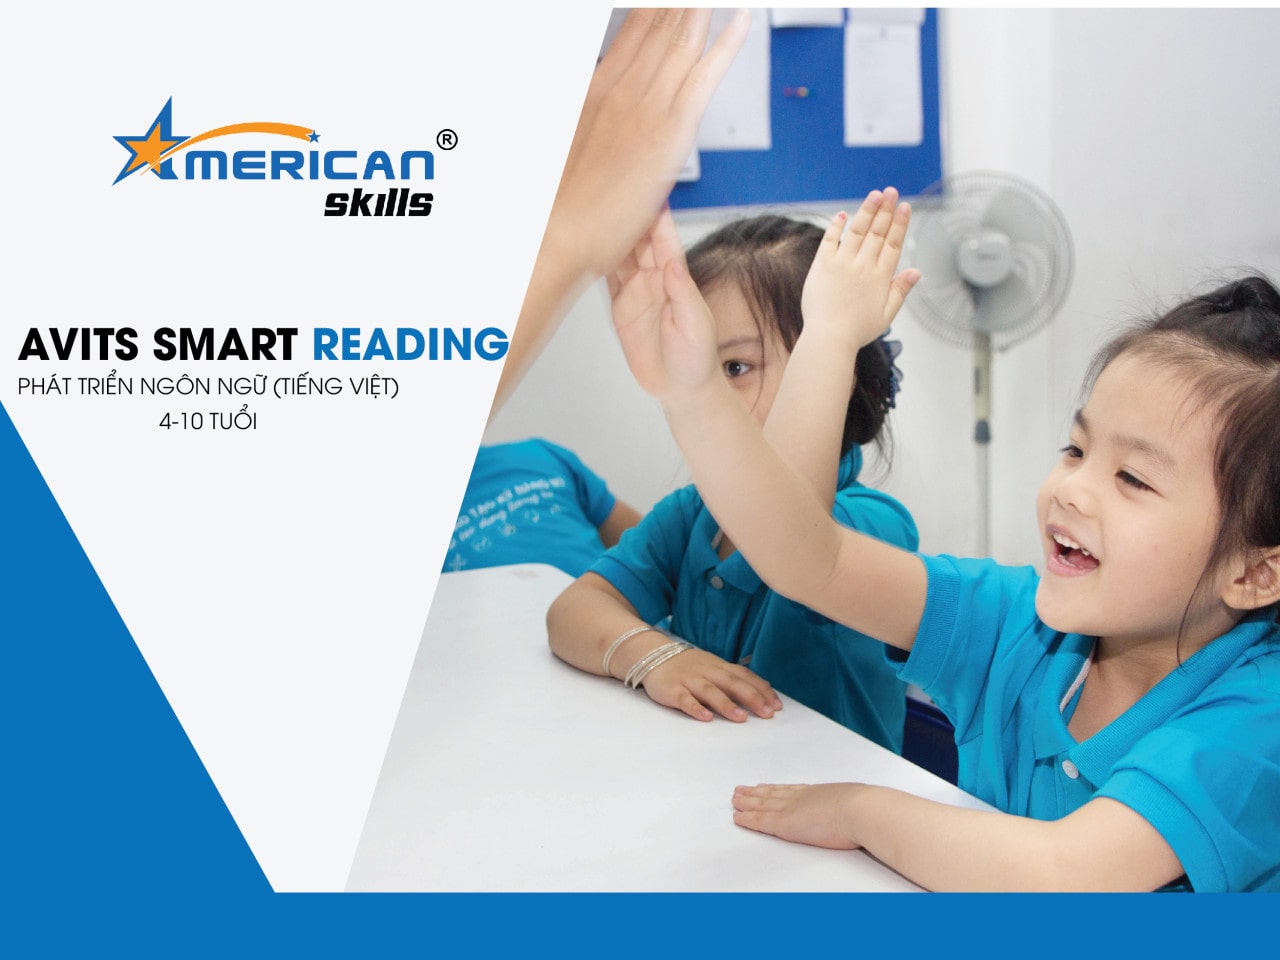 Phát triển ngôn ngữ (Tiếng Việt)-Avits Smart Reading : 4-10 TUỔI